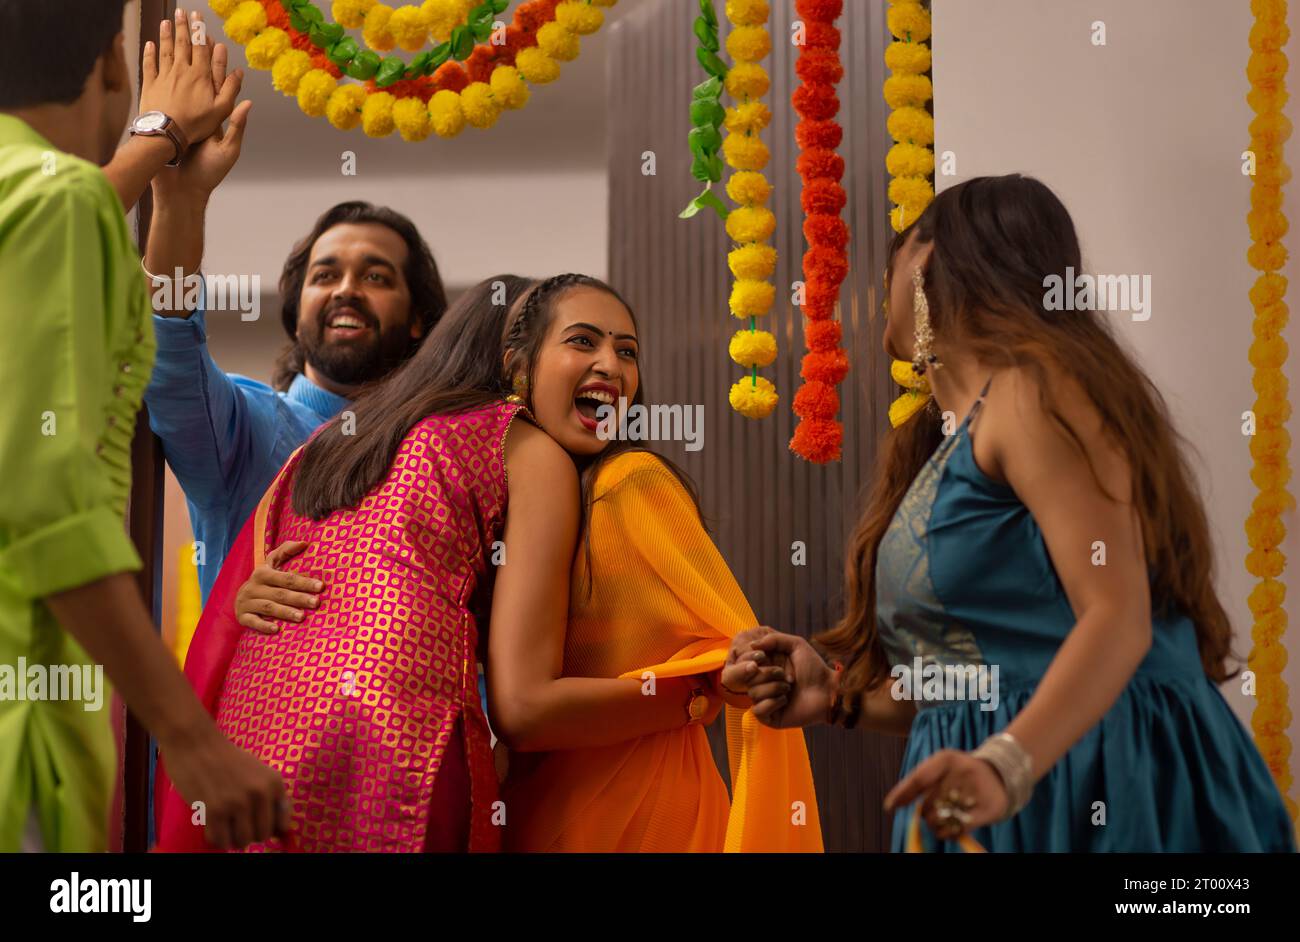 Allegri, emozionati e sorpresi, coppie che accolgono e salutano gli amici durante le celebrazioni Diwali all'ingresso della propria casa Foto Stock